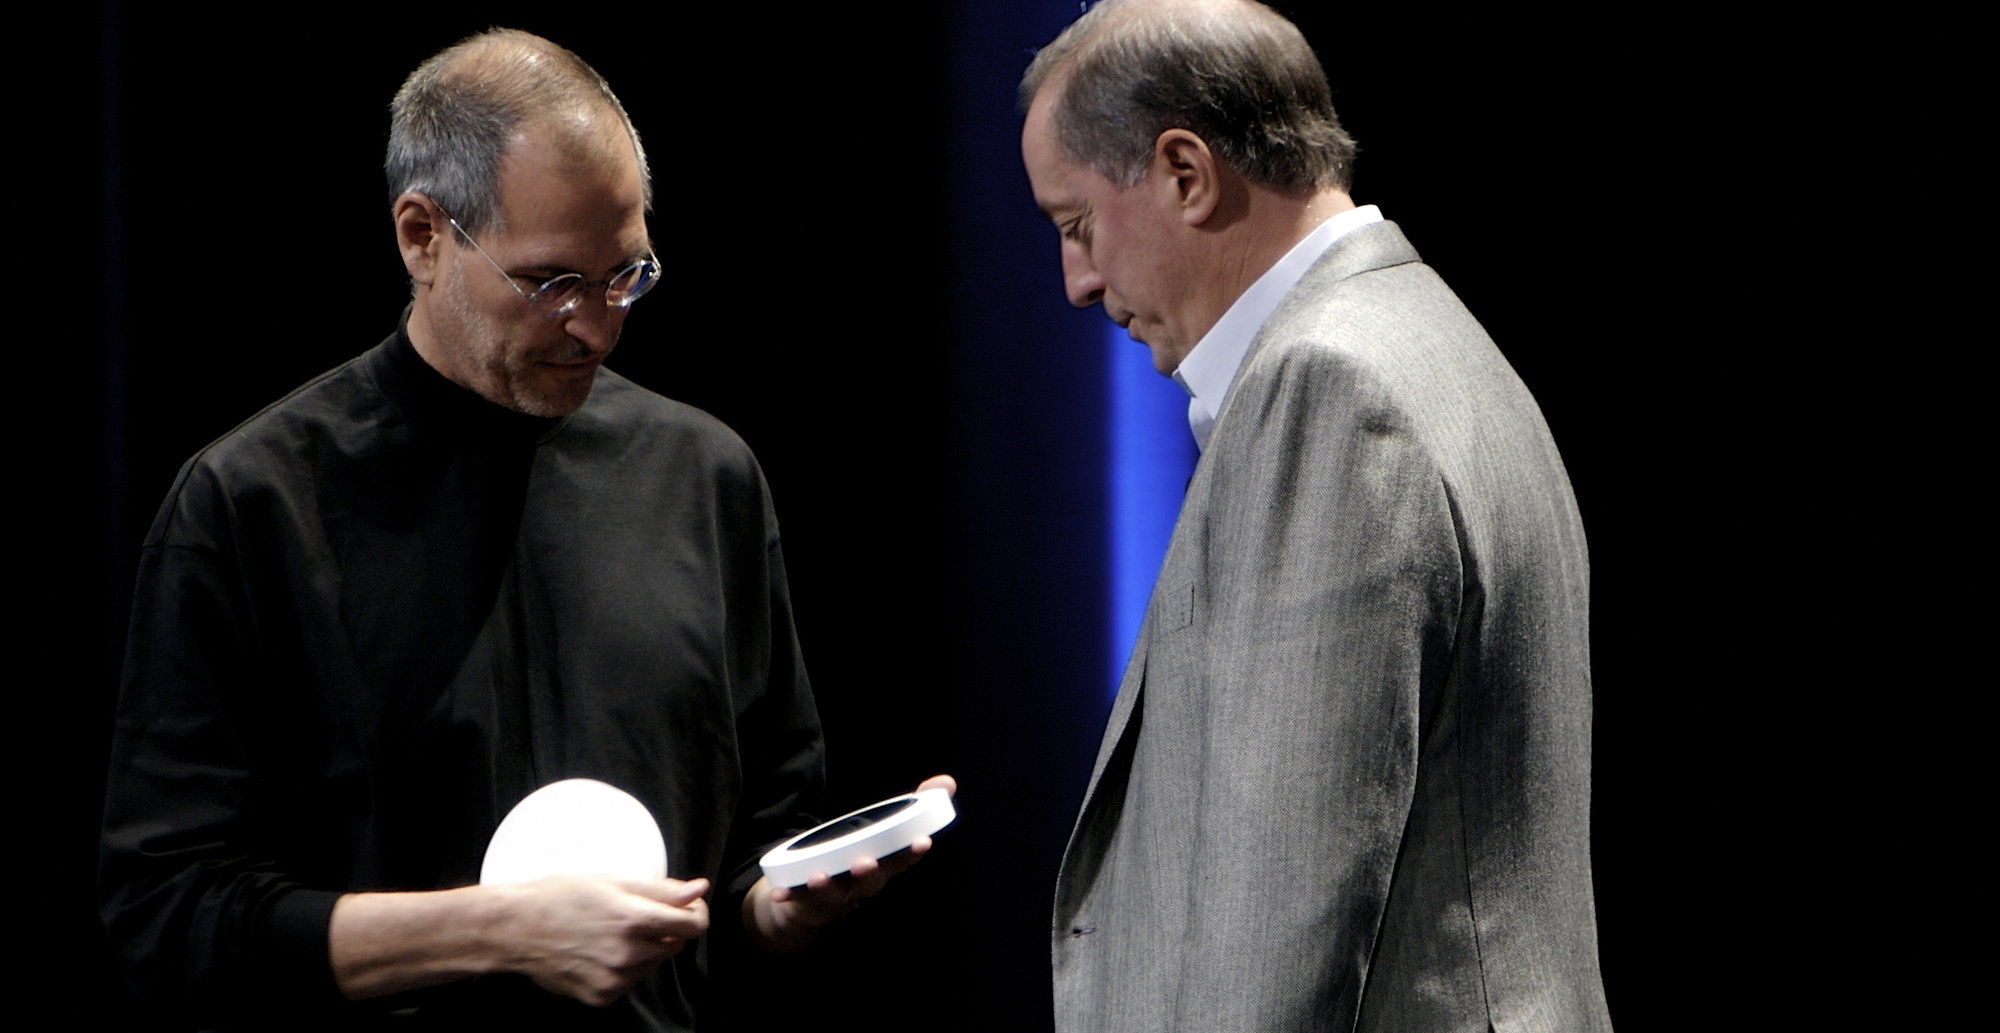 Den gang da: i 2007 takket Steve Jobs Intels toppsjef Paul Otellini for samarbeidet etter skifte til Intels x86-arkitektur i 2005.